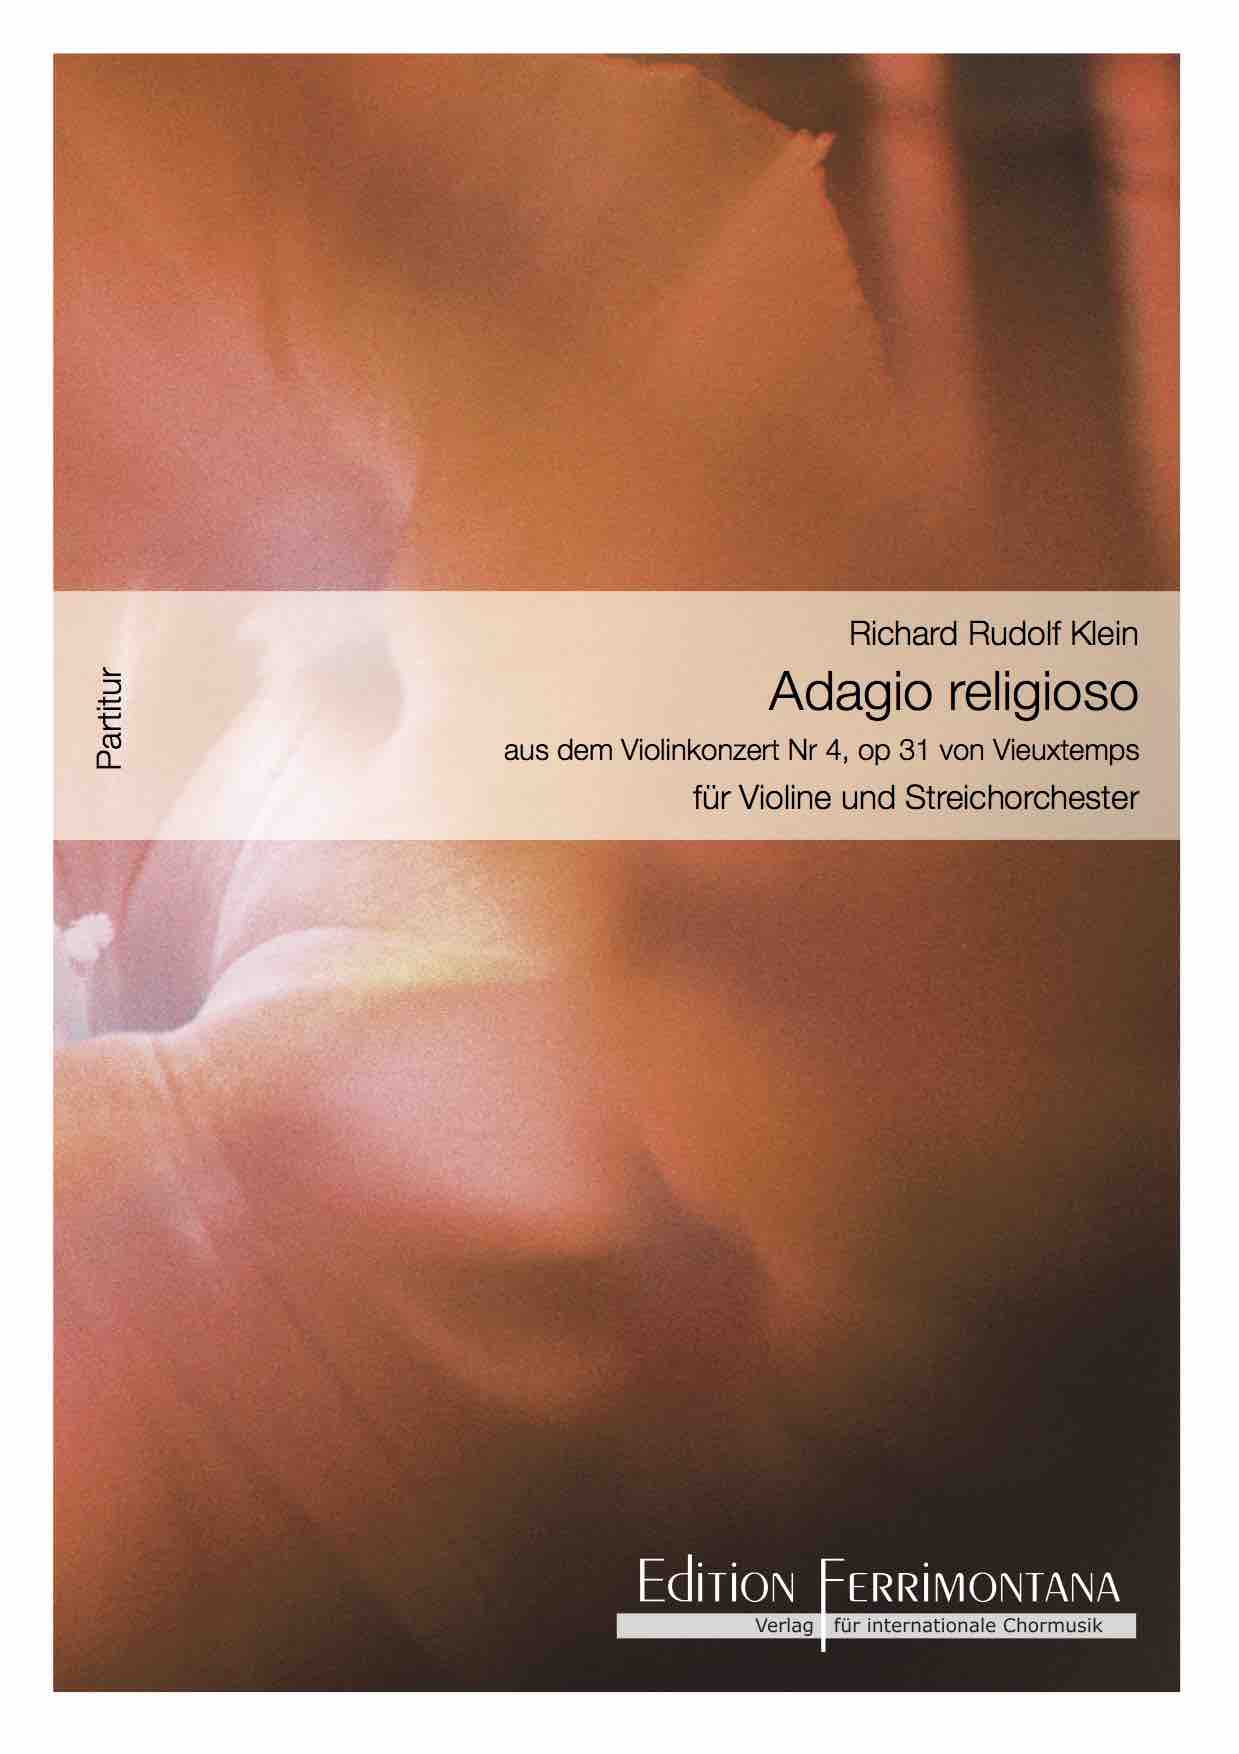 Adagio religioso - aus dem Violinkonzert Nr 4, op 31 von Vieuxtemps für Violine und Streichorchester - Partitur